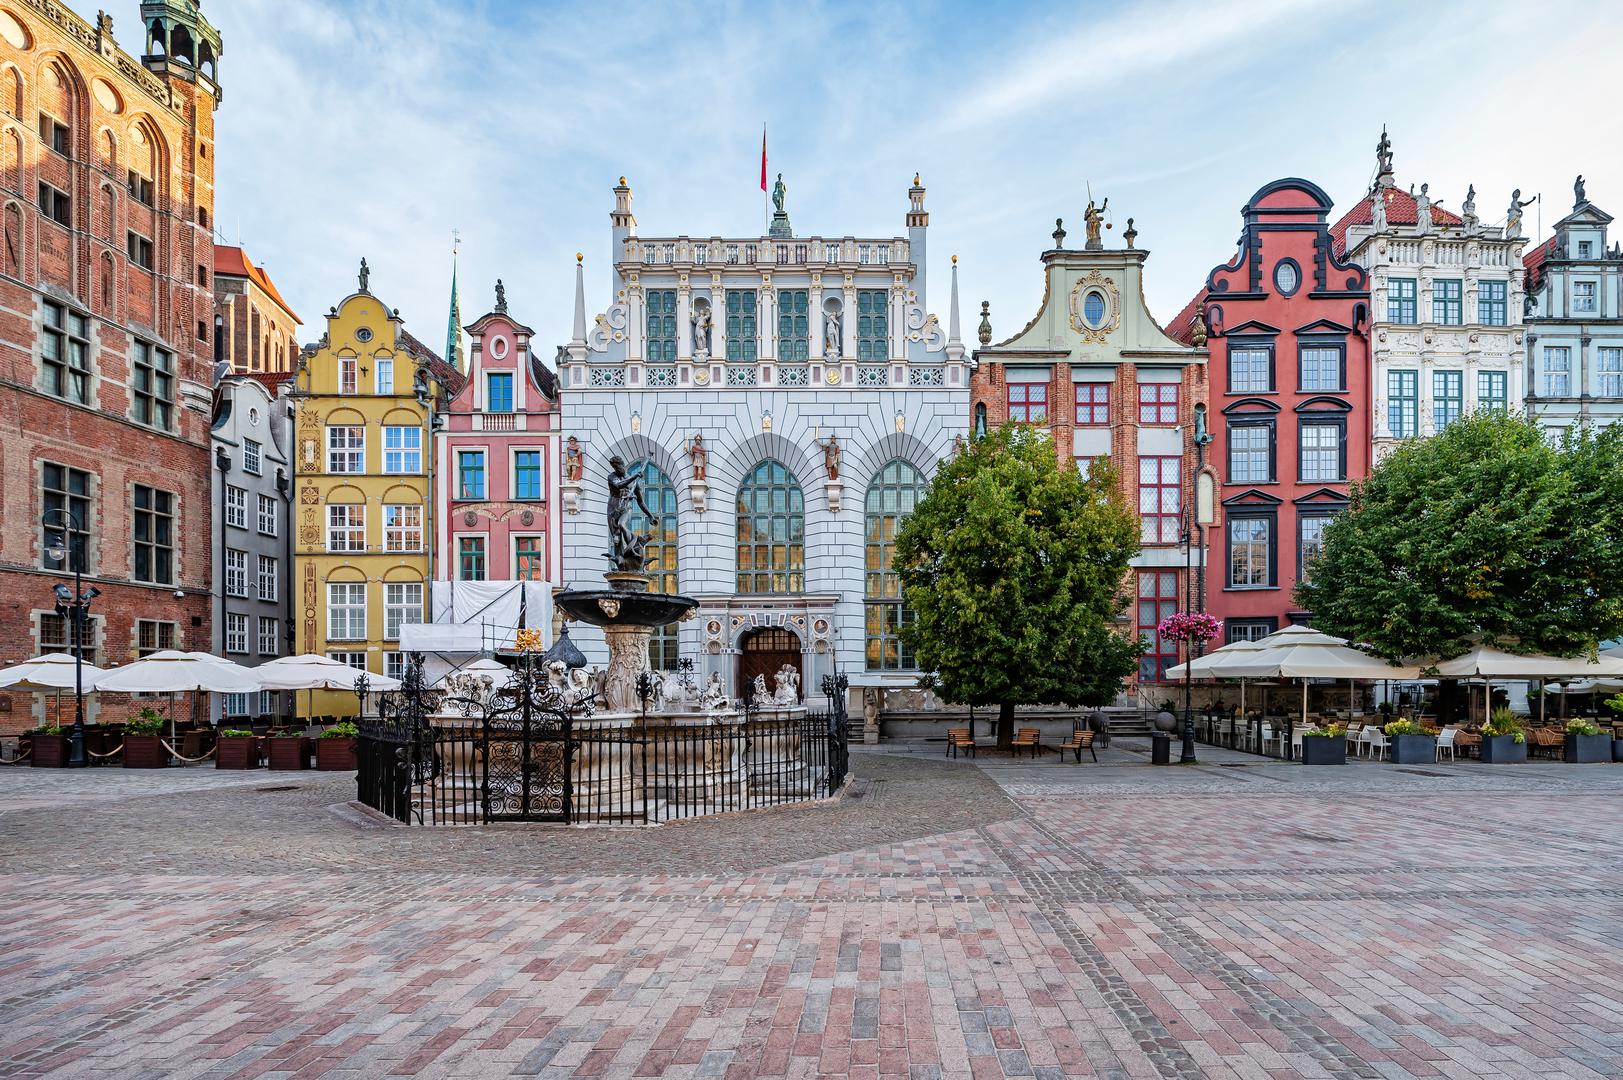 Gdanjsk, Poljska: Ovaj poljski lučki grad, smješten na baltičkoj obali zemlje, postigao je 95 posto. Najpoznatije je po svojoj veličanstvenoj arhitekturi, zelenim površinama i okolnoj prirodi - uključujući tihe plaže - i vrlo je popularno među ljubiteljima povijesti. Ako ste se željeli preseliti u Gdańsk, potencijalno biste donijeli mudru odluku jer je to jedno od najbolje ocijenjenih odredišta za doseljavanje useljenika. Najnovija studija EU-a pokazala je da je 87 posto stanovnika reklo da je grad dobro mjesto za život imigranata. To ga čini petim najvišim u Europi.